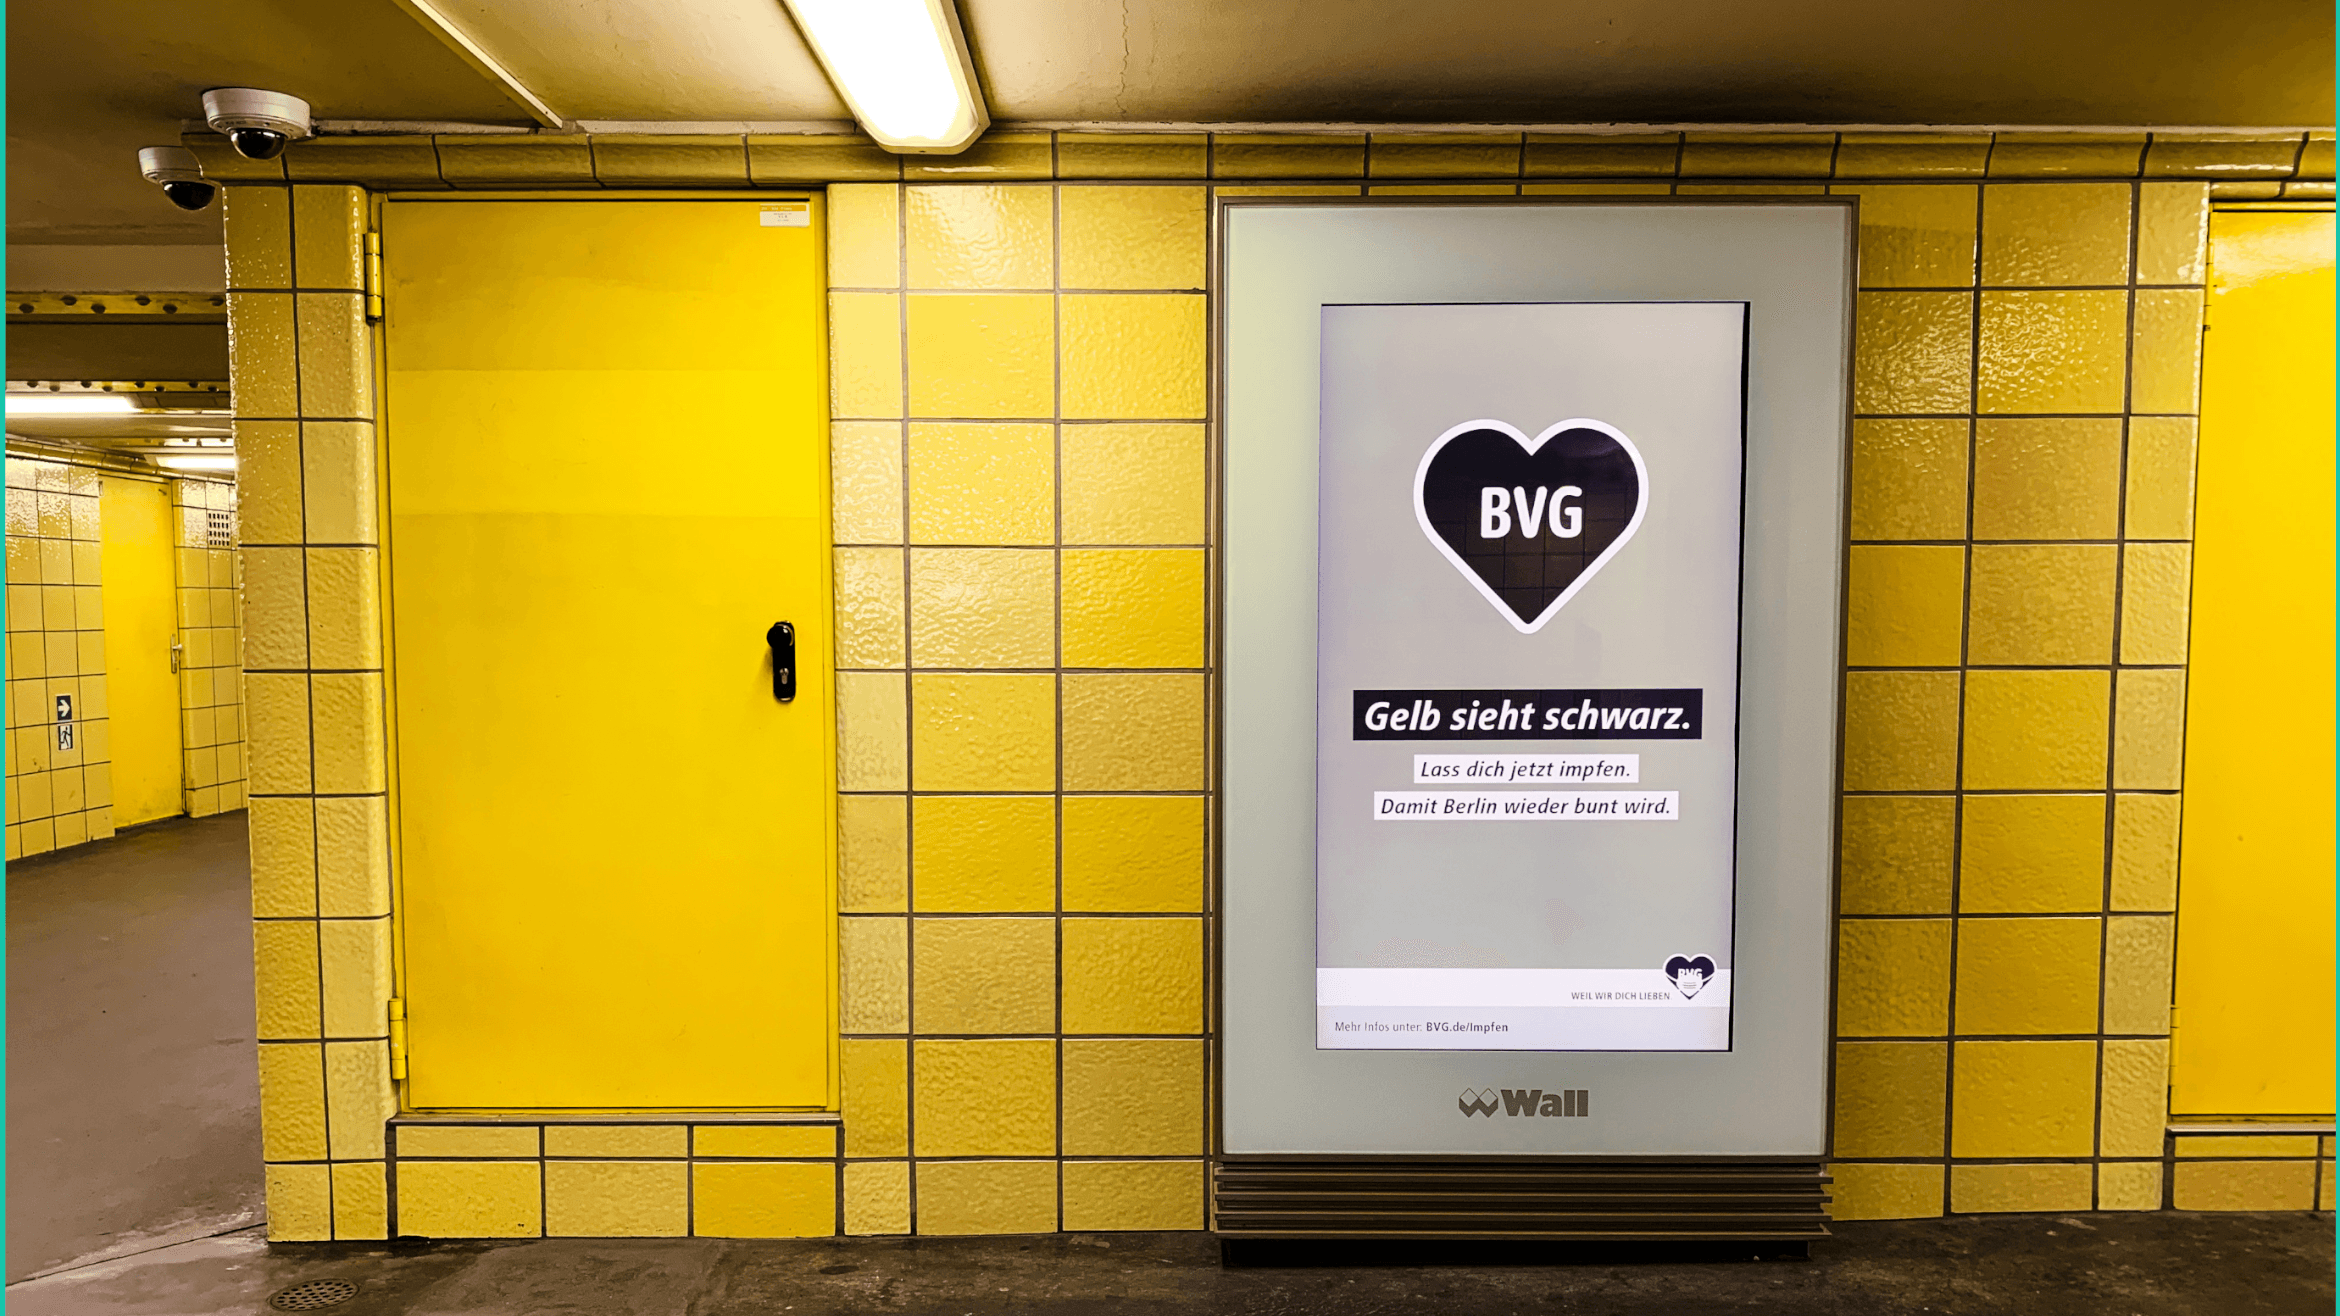 Die neue Kampagne der BVG wird unterstützt von GUB.berlin.